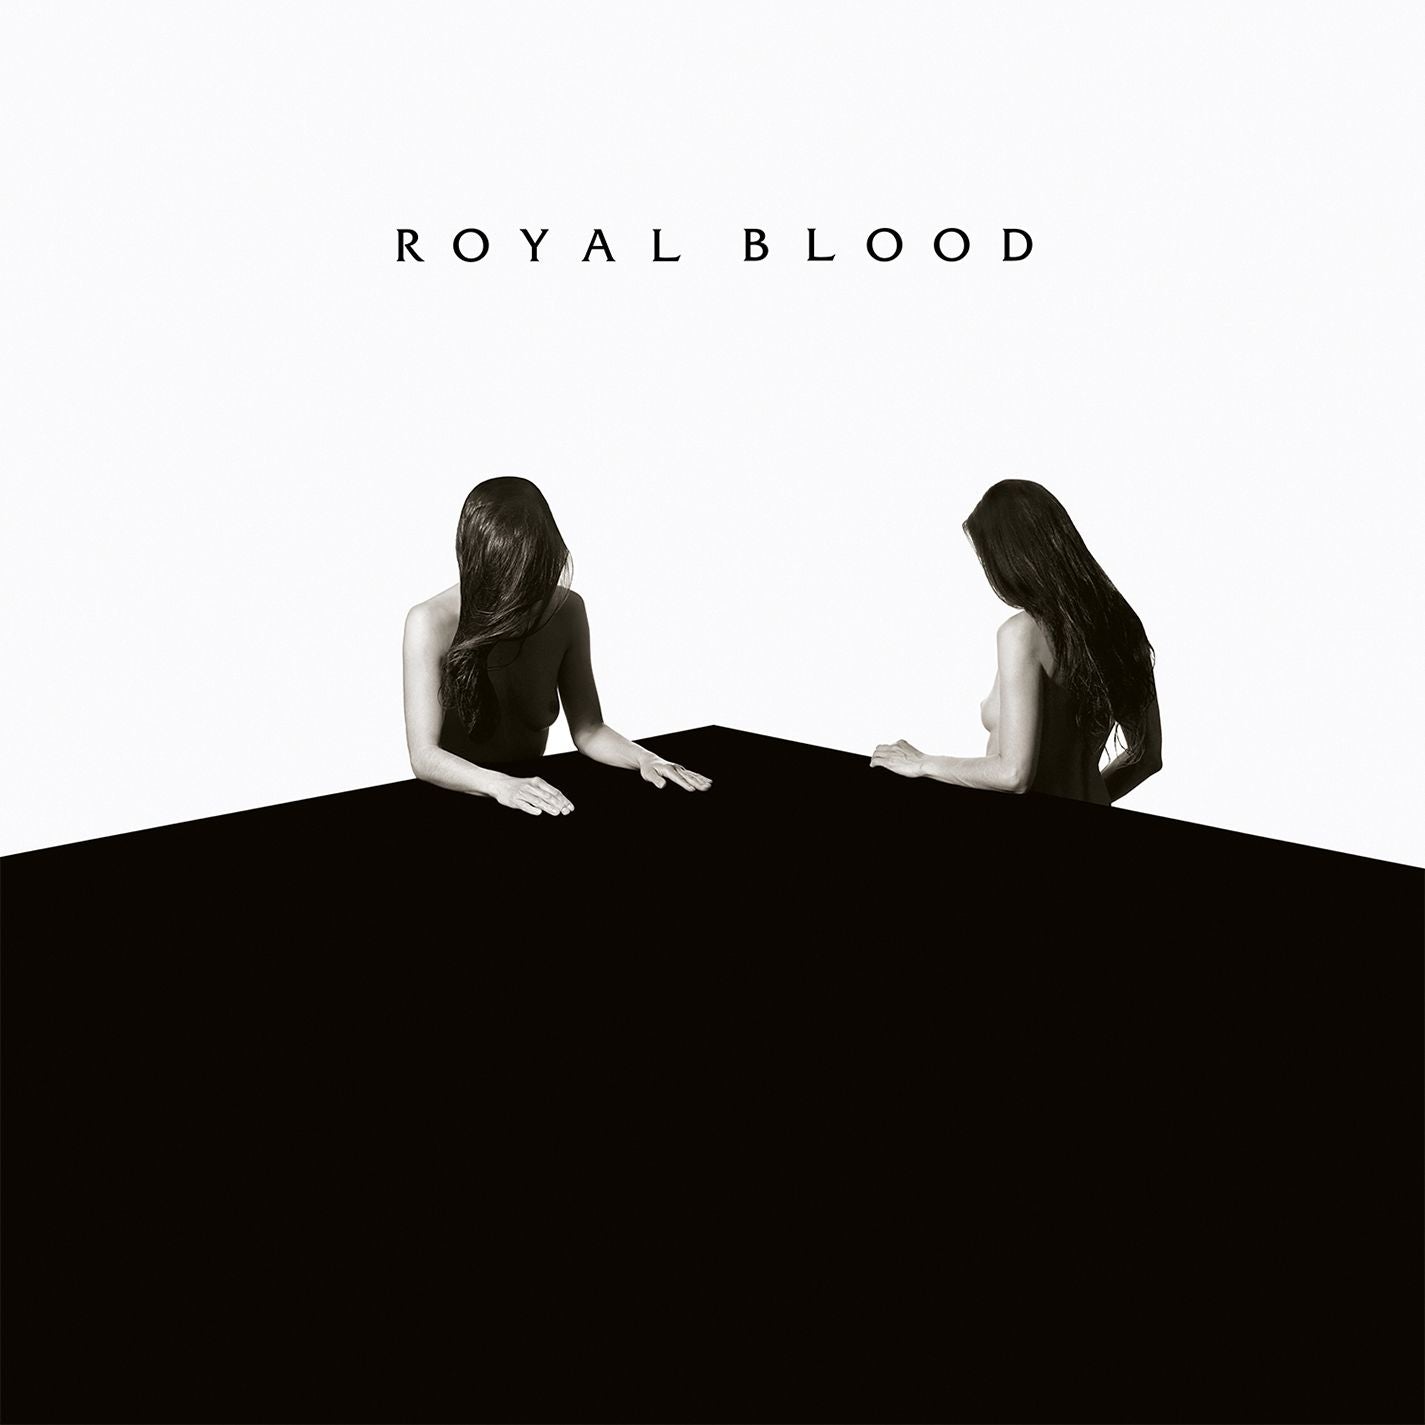 Royal Blood - How Did We Get So Dark? [Silver Vinyl]